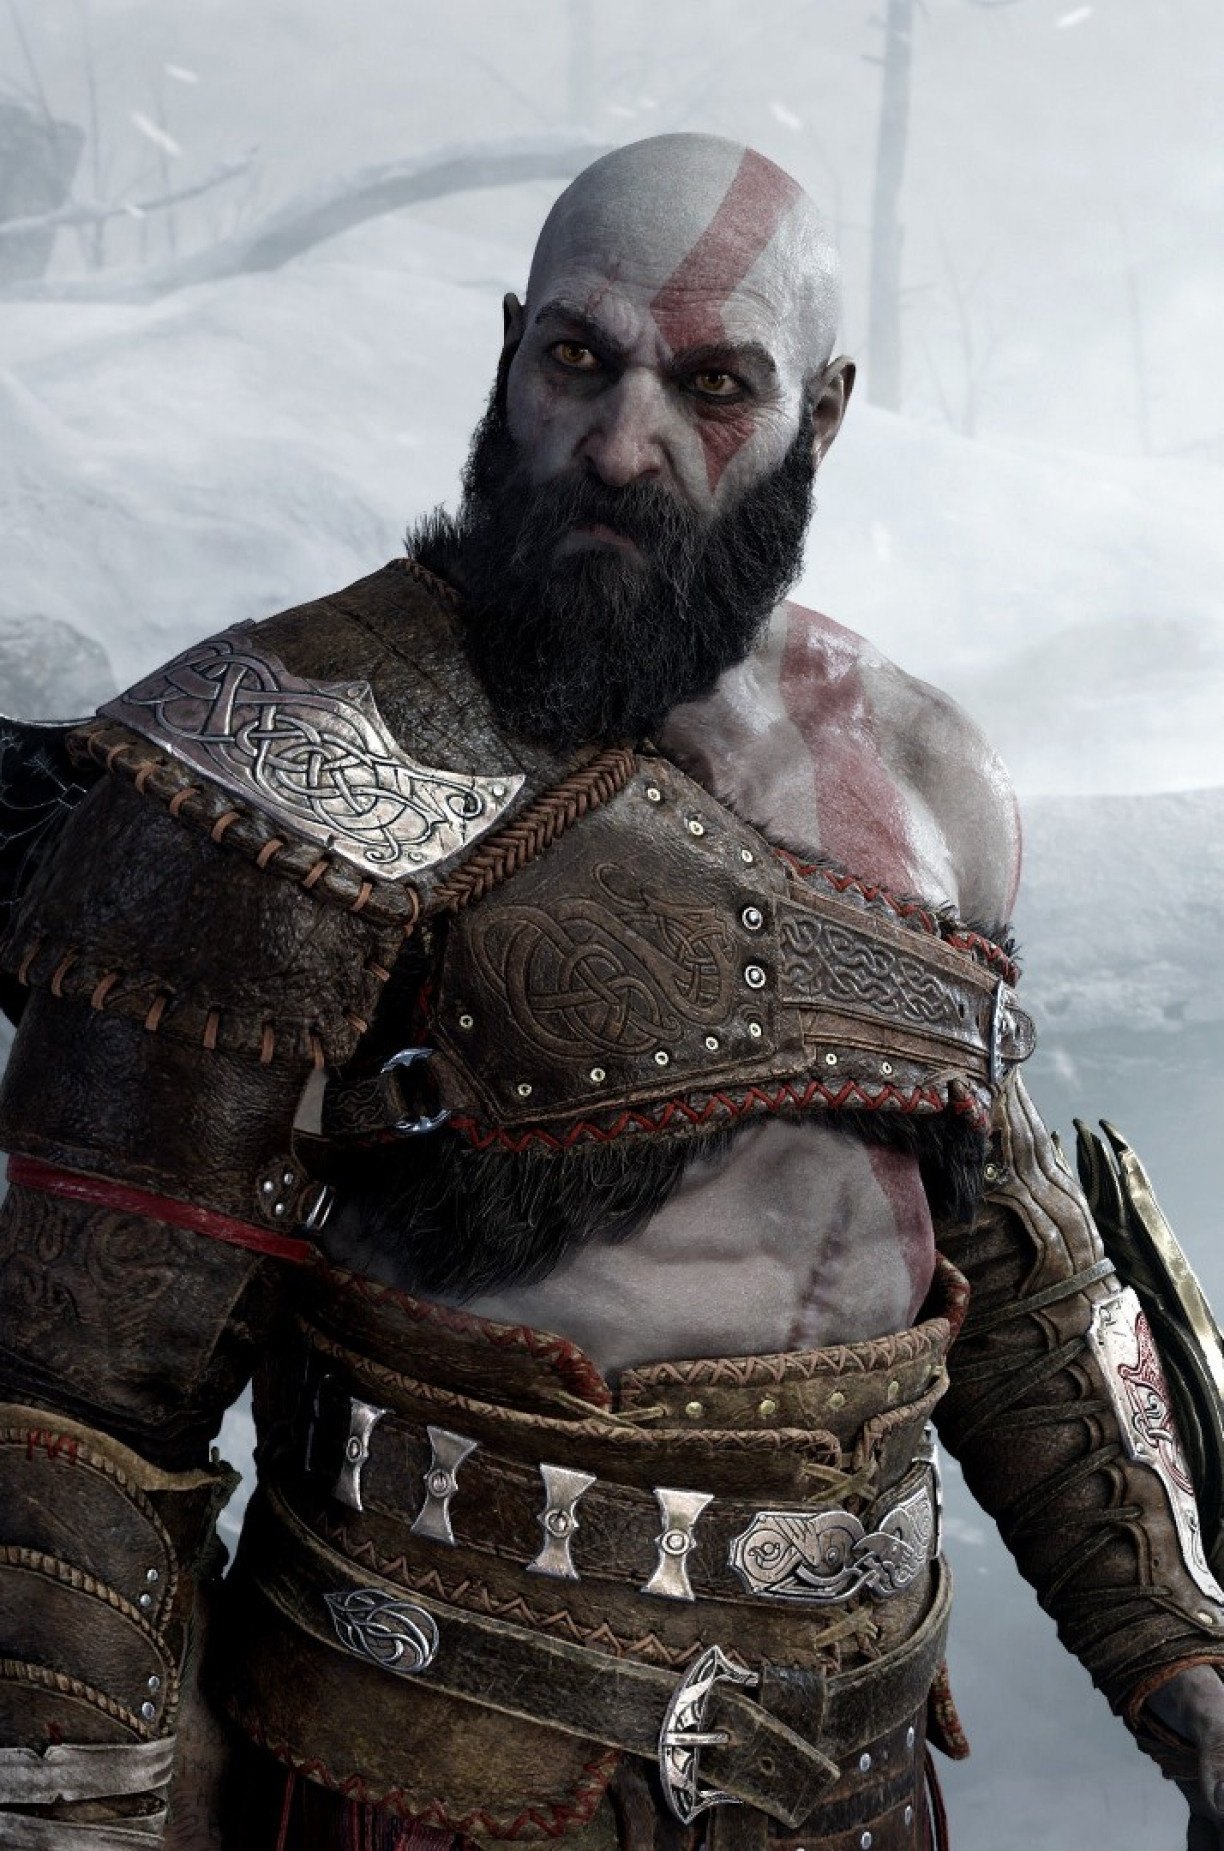 God of War Ragnarok: quanto tempo leva para zerar o jogo